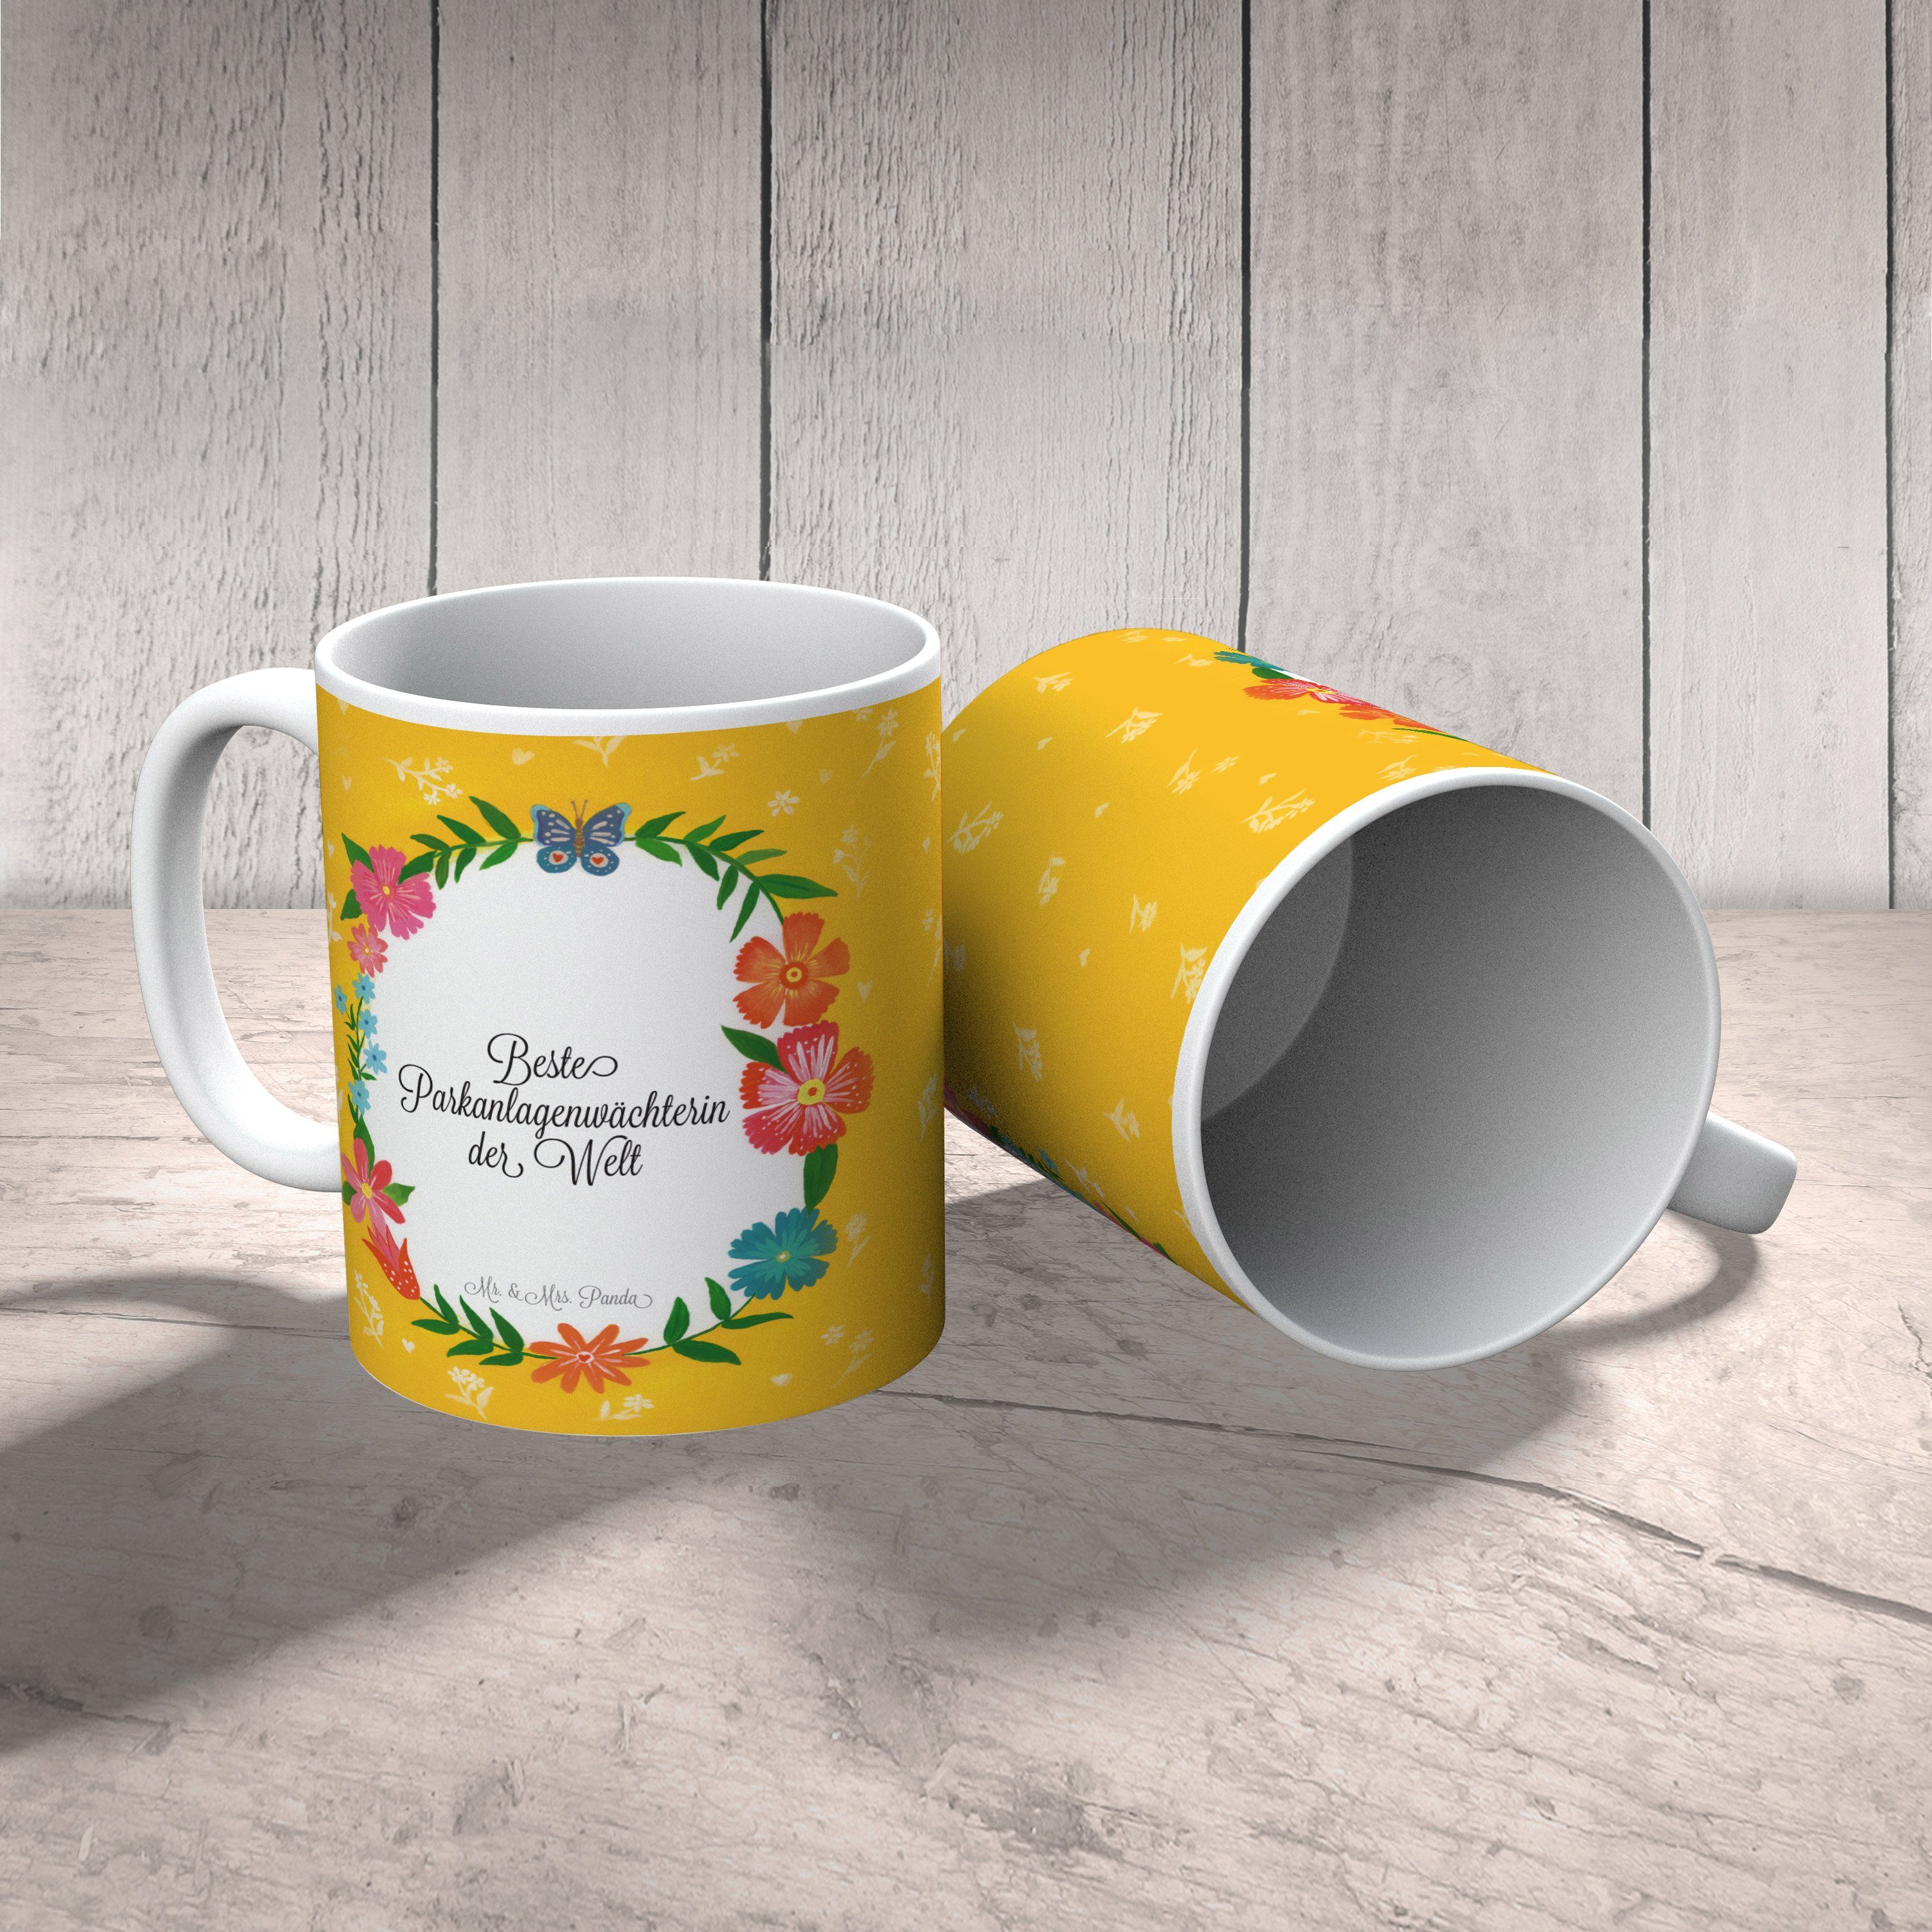 Mr. & Mrs. Panda Tasse Teetasse, - Geschenk, Kaff, Büro Keramik Abschied, Tasse, Parkanlagenwächterin